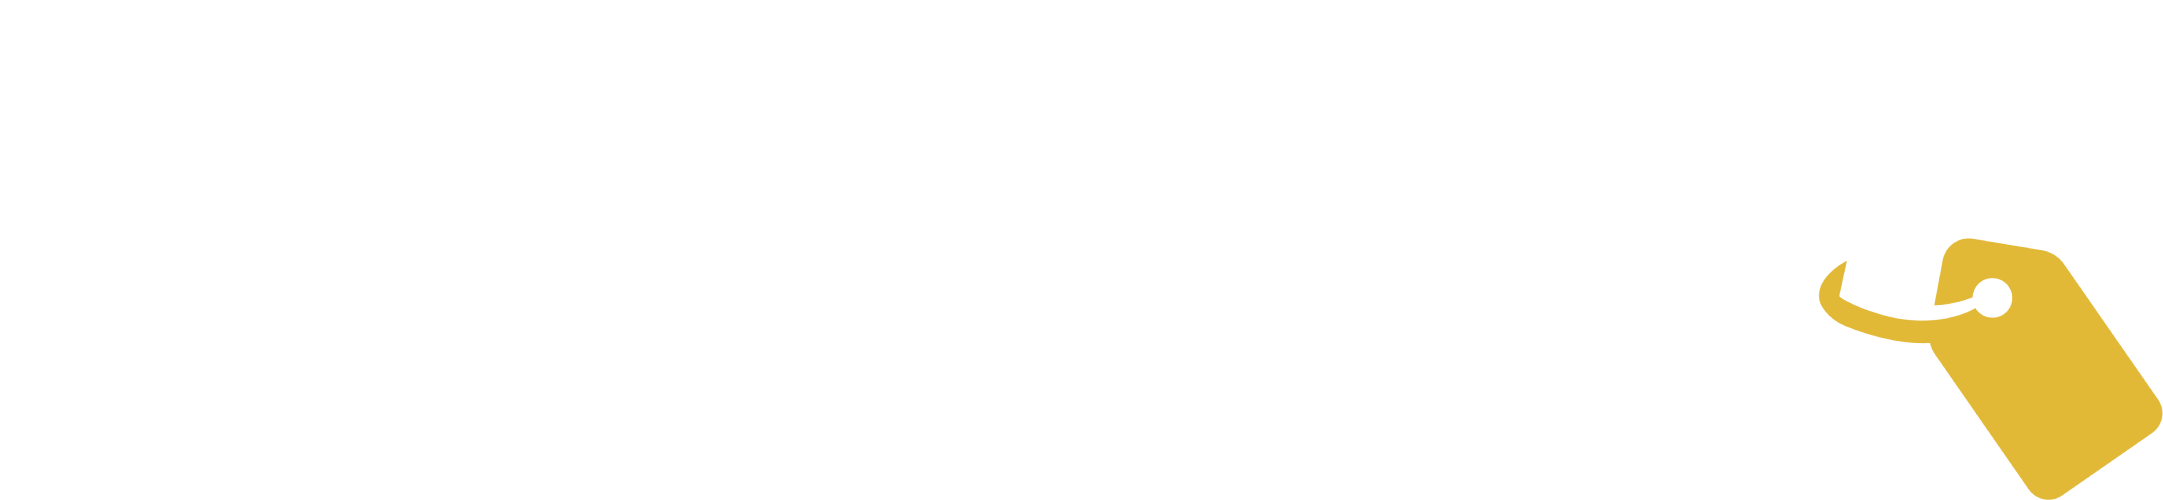 Muddler logo